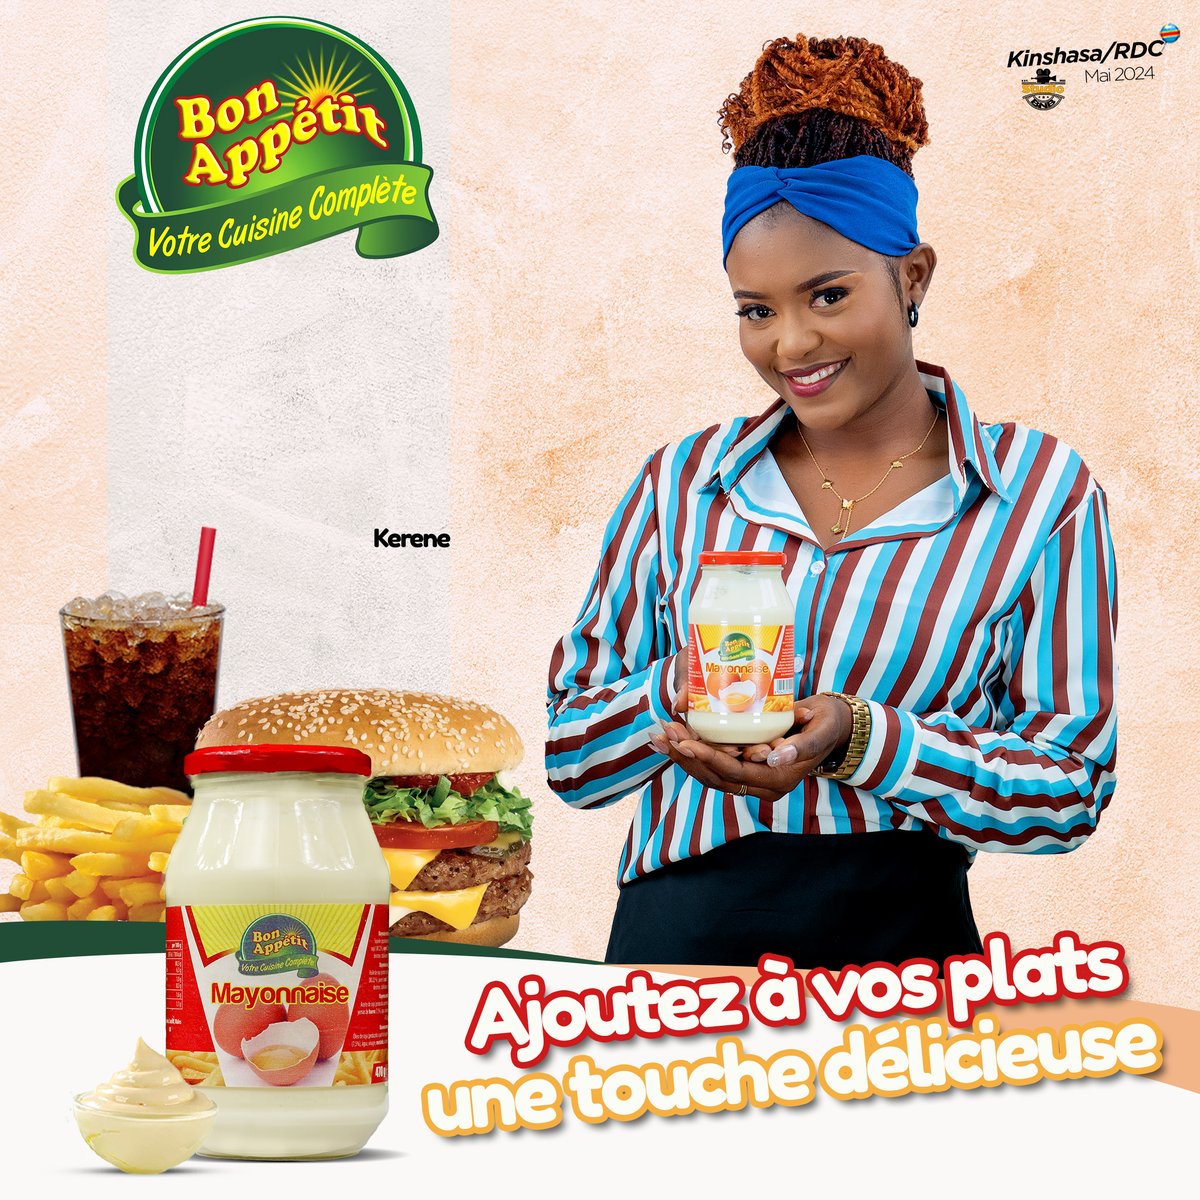 Le goût fin et délicat de la mayonnaise bon Appétit relèvera tous vos plats avec sa délicieuse saveur.
La mayonnaise Bon Appétit, ajoutez à vos plats une touche délicieuse.

#BonAppetitRDC #Kinshasa #RDC2023 #ELSsarl #BisoNaBiso #Aquasplash #KinMarché